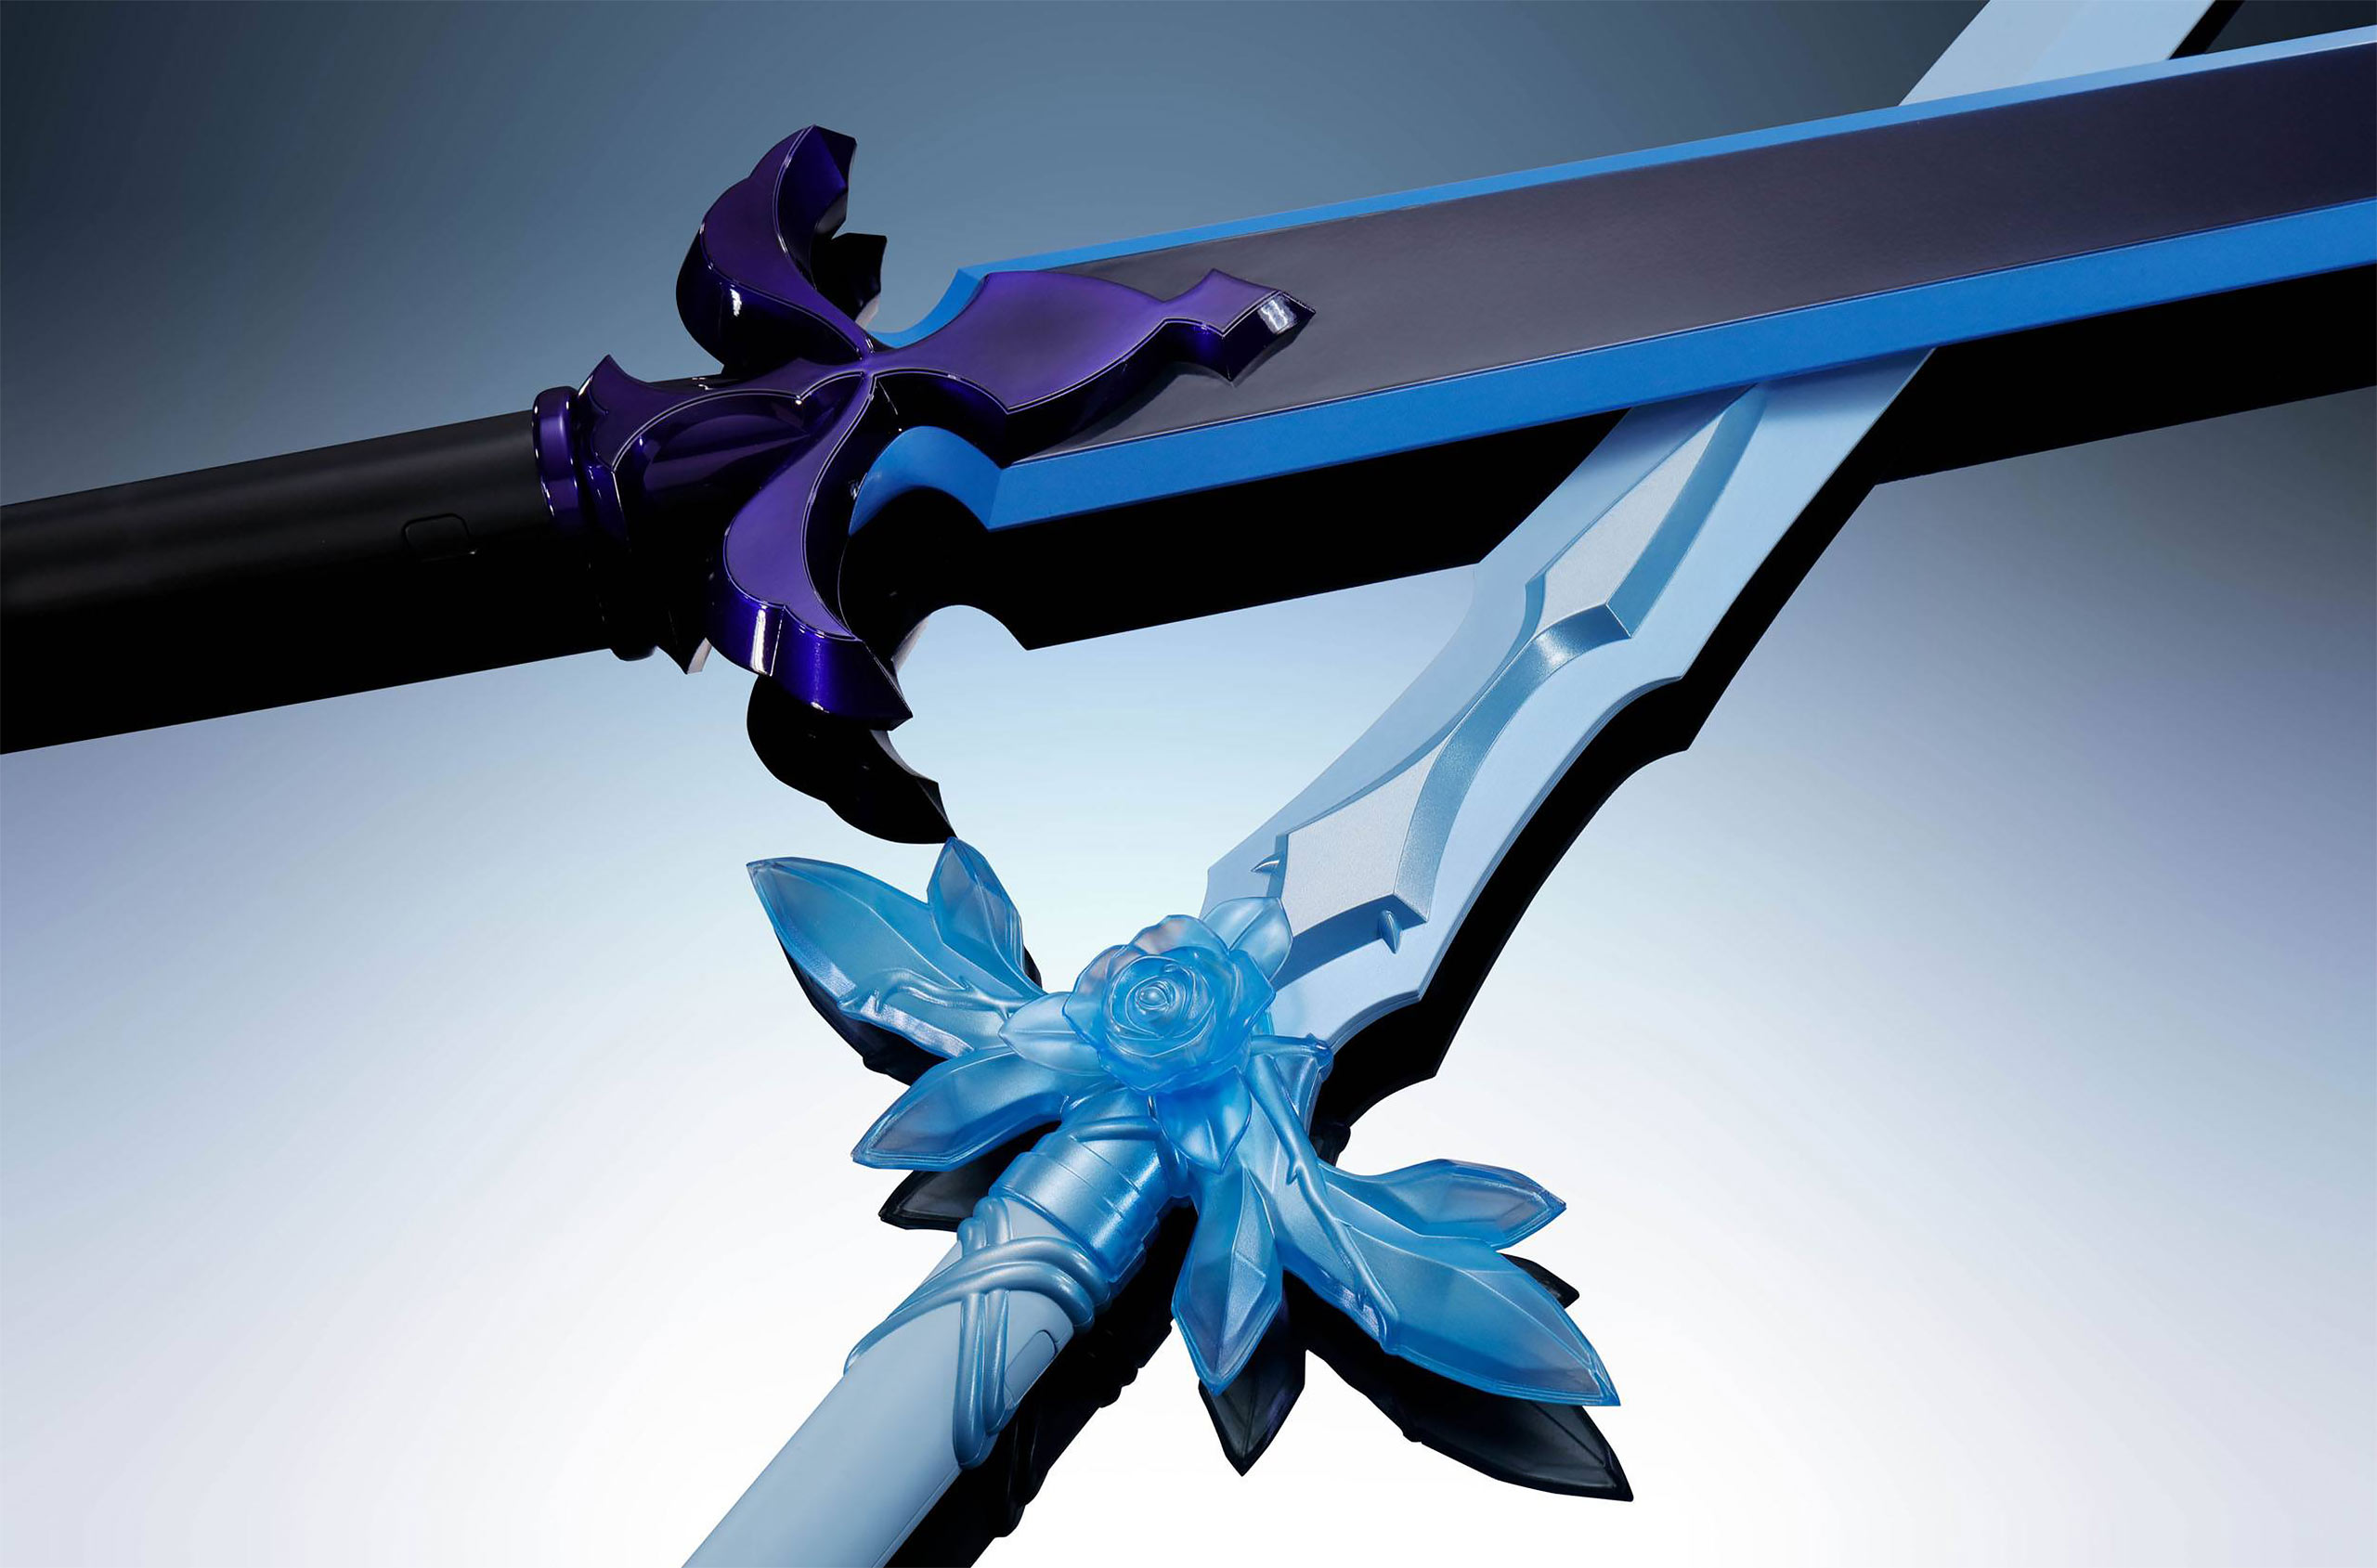 Sword Art Online Alicization - War of Underworld Réplique de l'épée Rose Bleue